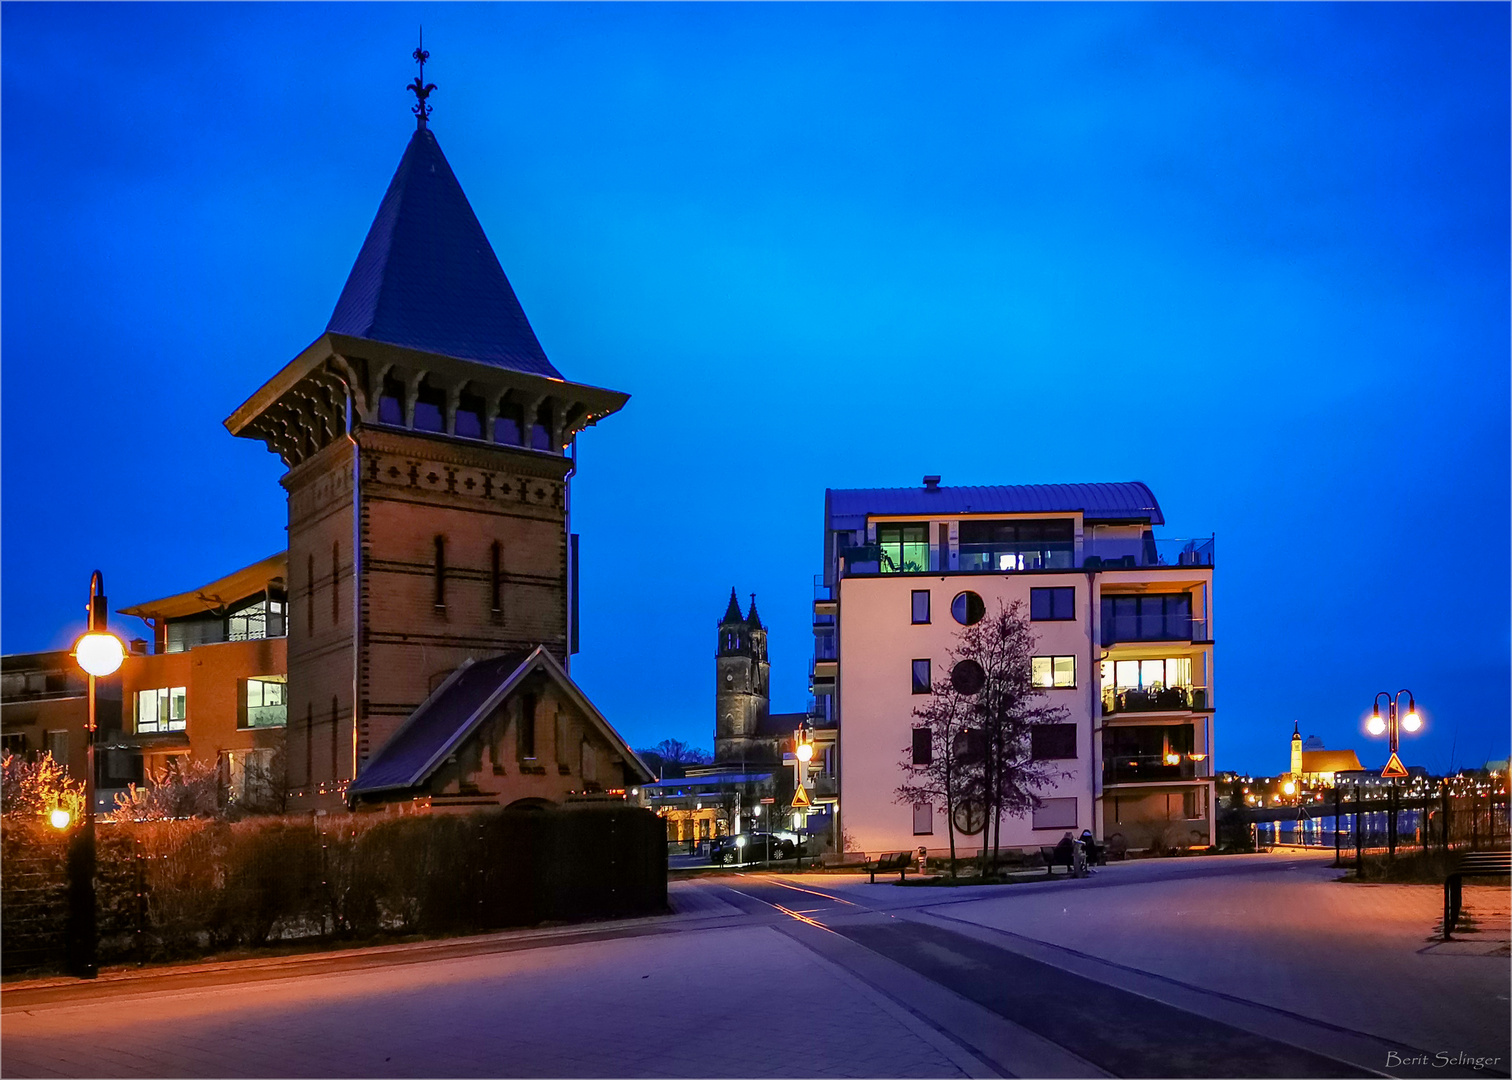 Wasserturm in Magdeburg